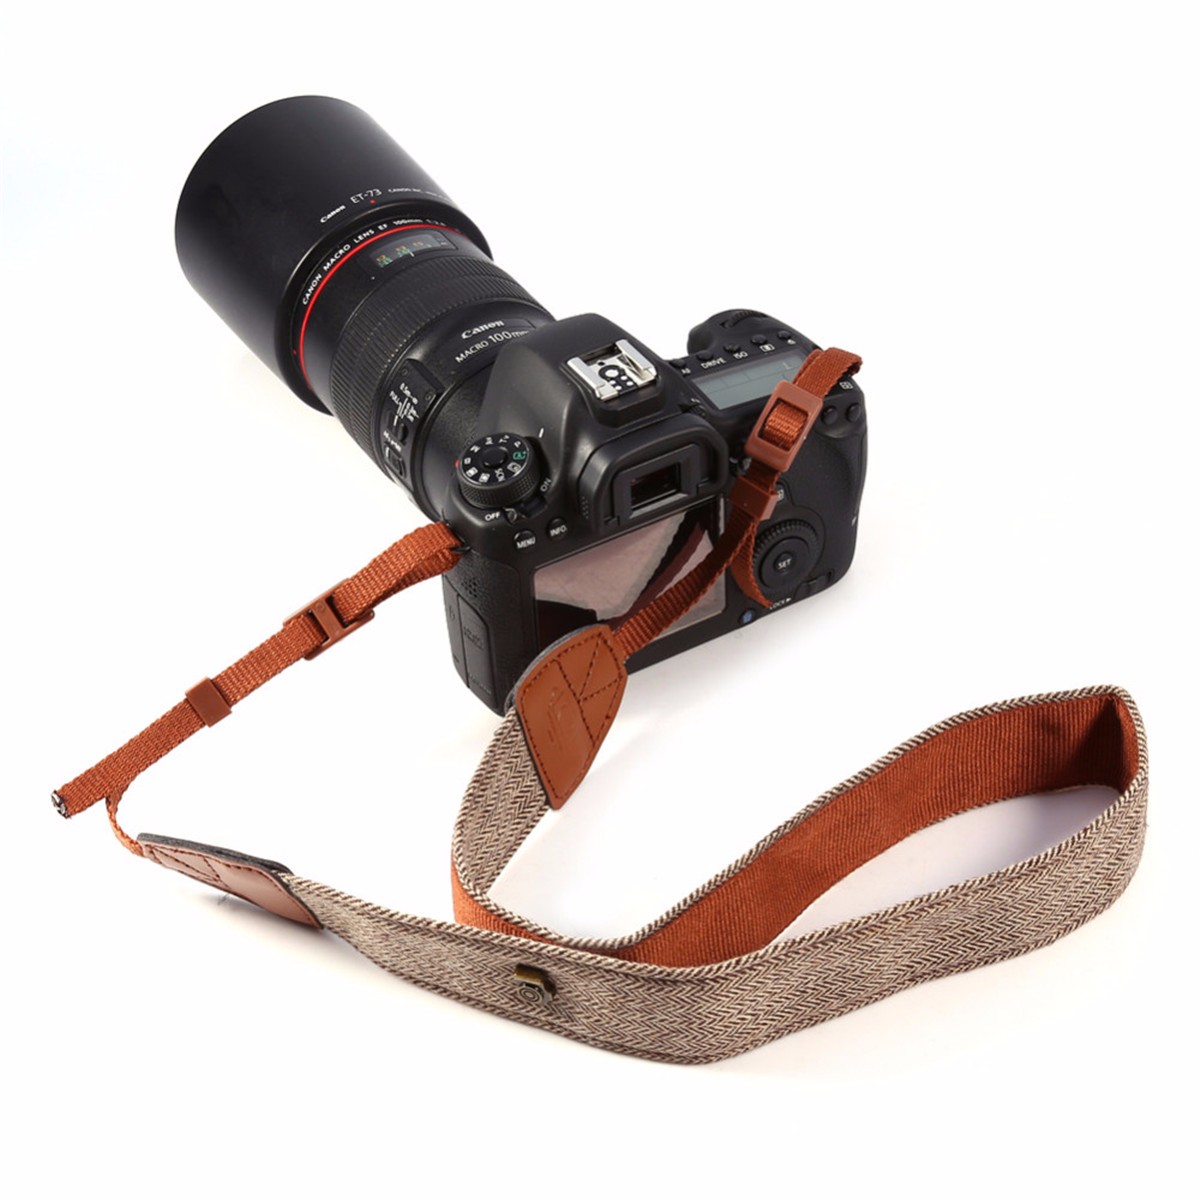 Adjustable-Vintage-Retro-Style-Shoulder-Neck-Strap-Belt-Sling-for-SLR-DSLR-Digital-Cameras-for-Canon-1272821